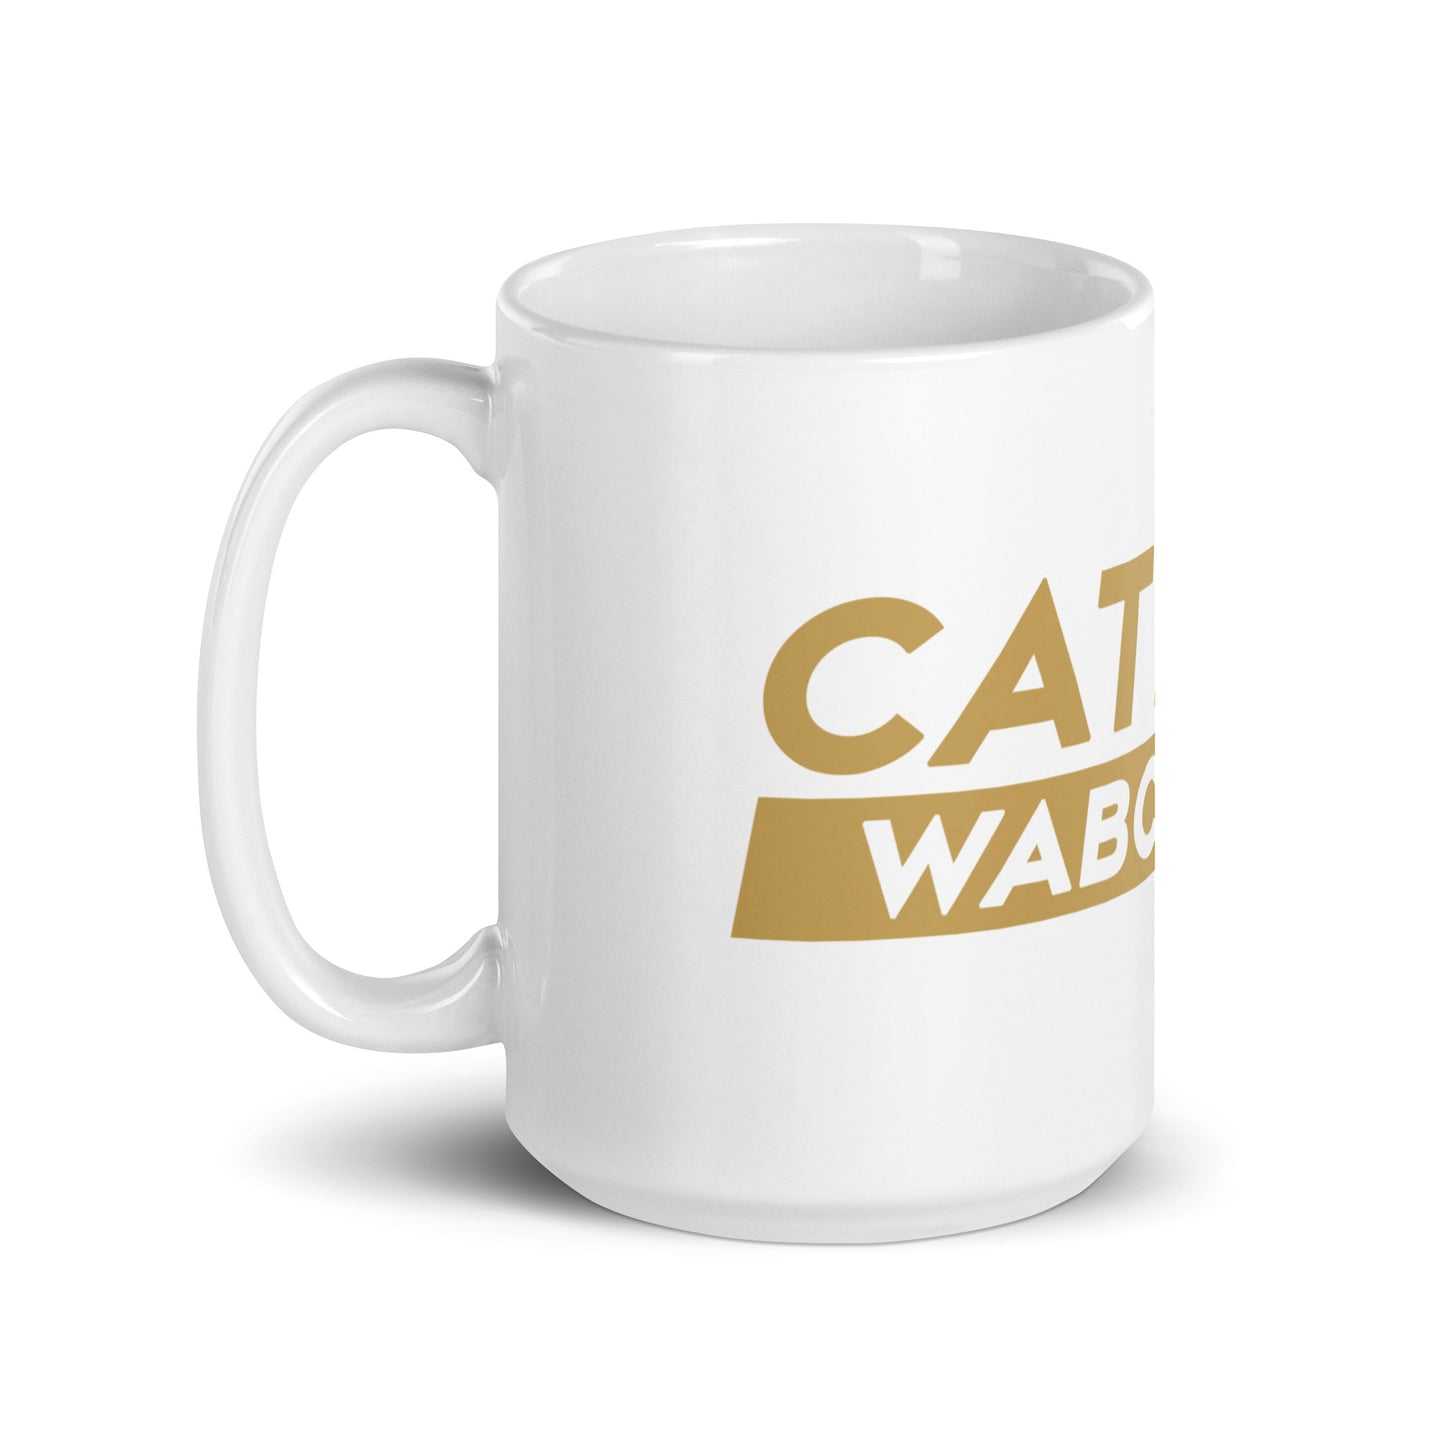 Cat Man mug